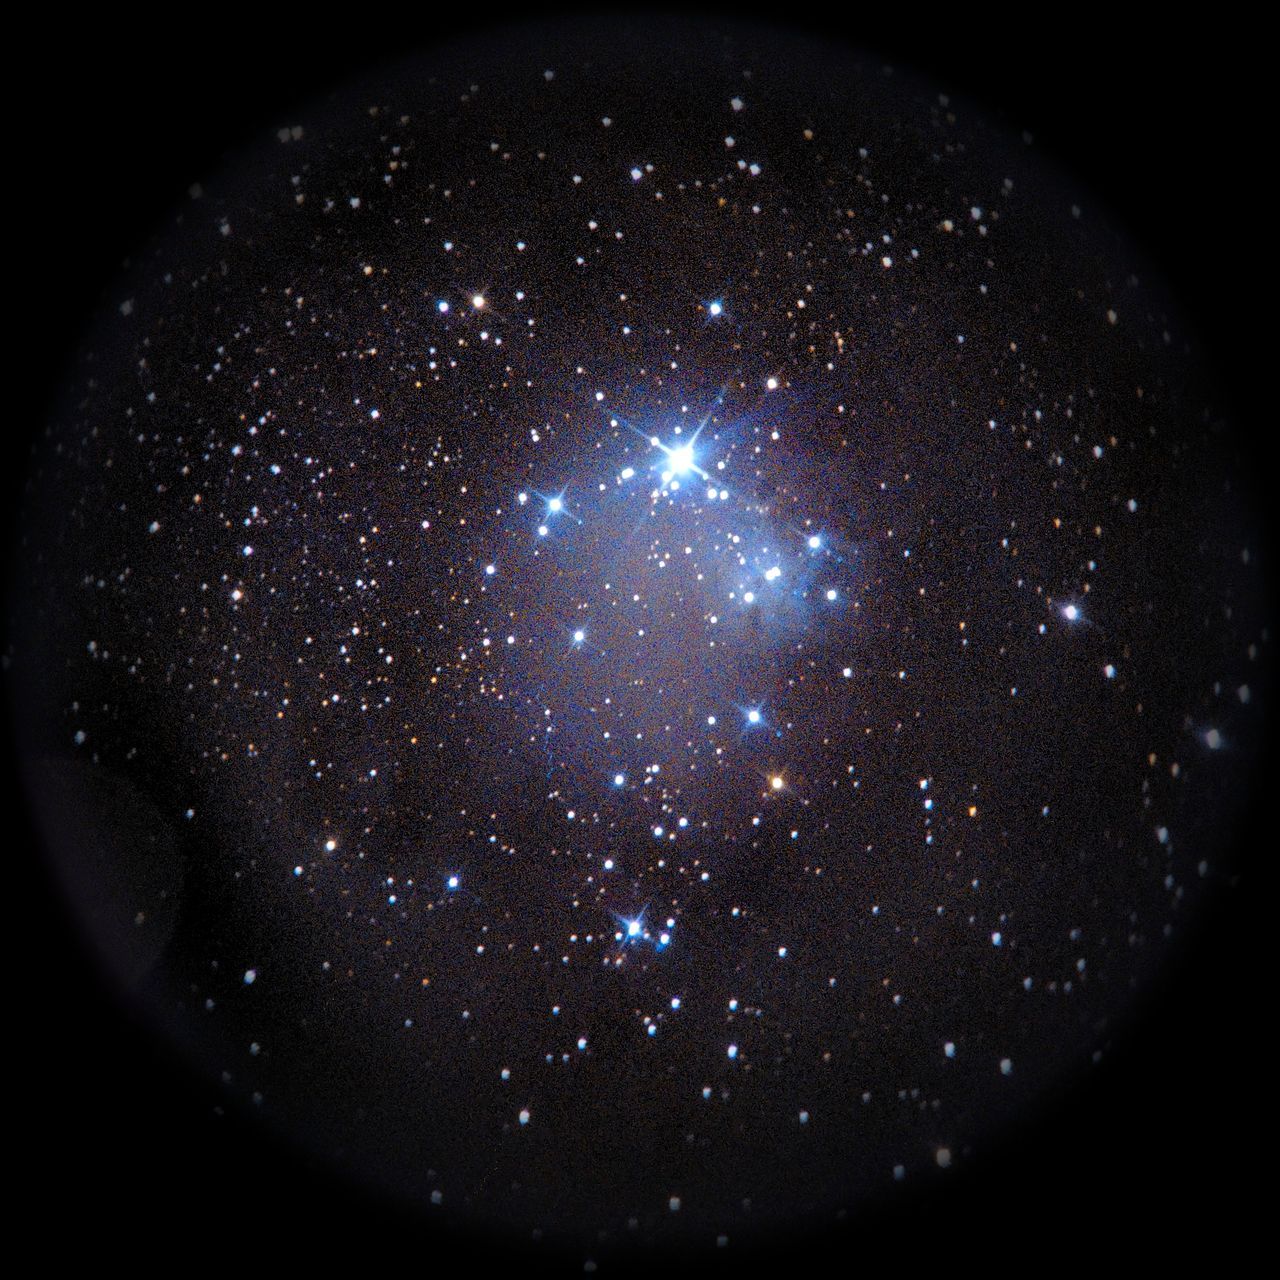 Image of NGC2264